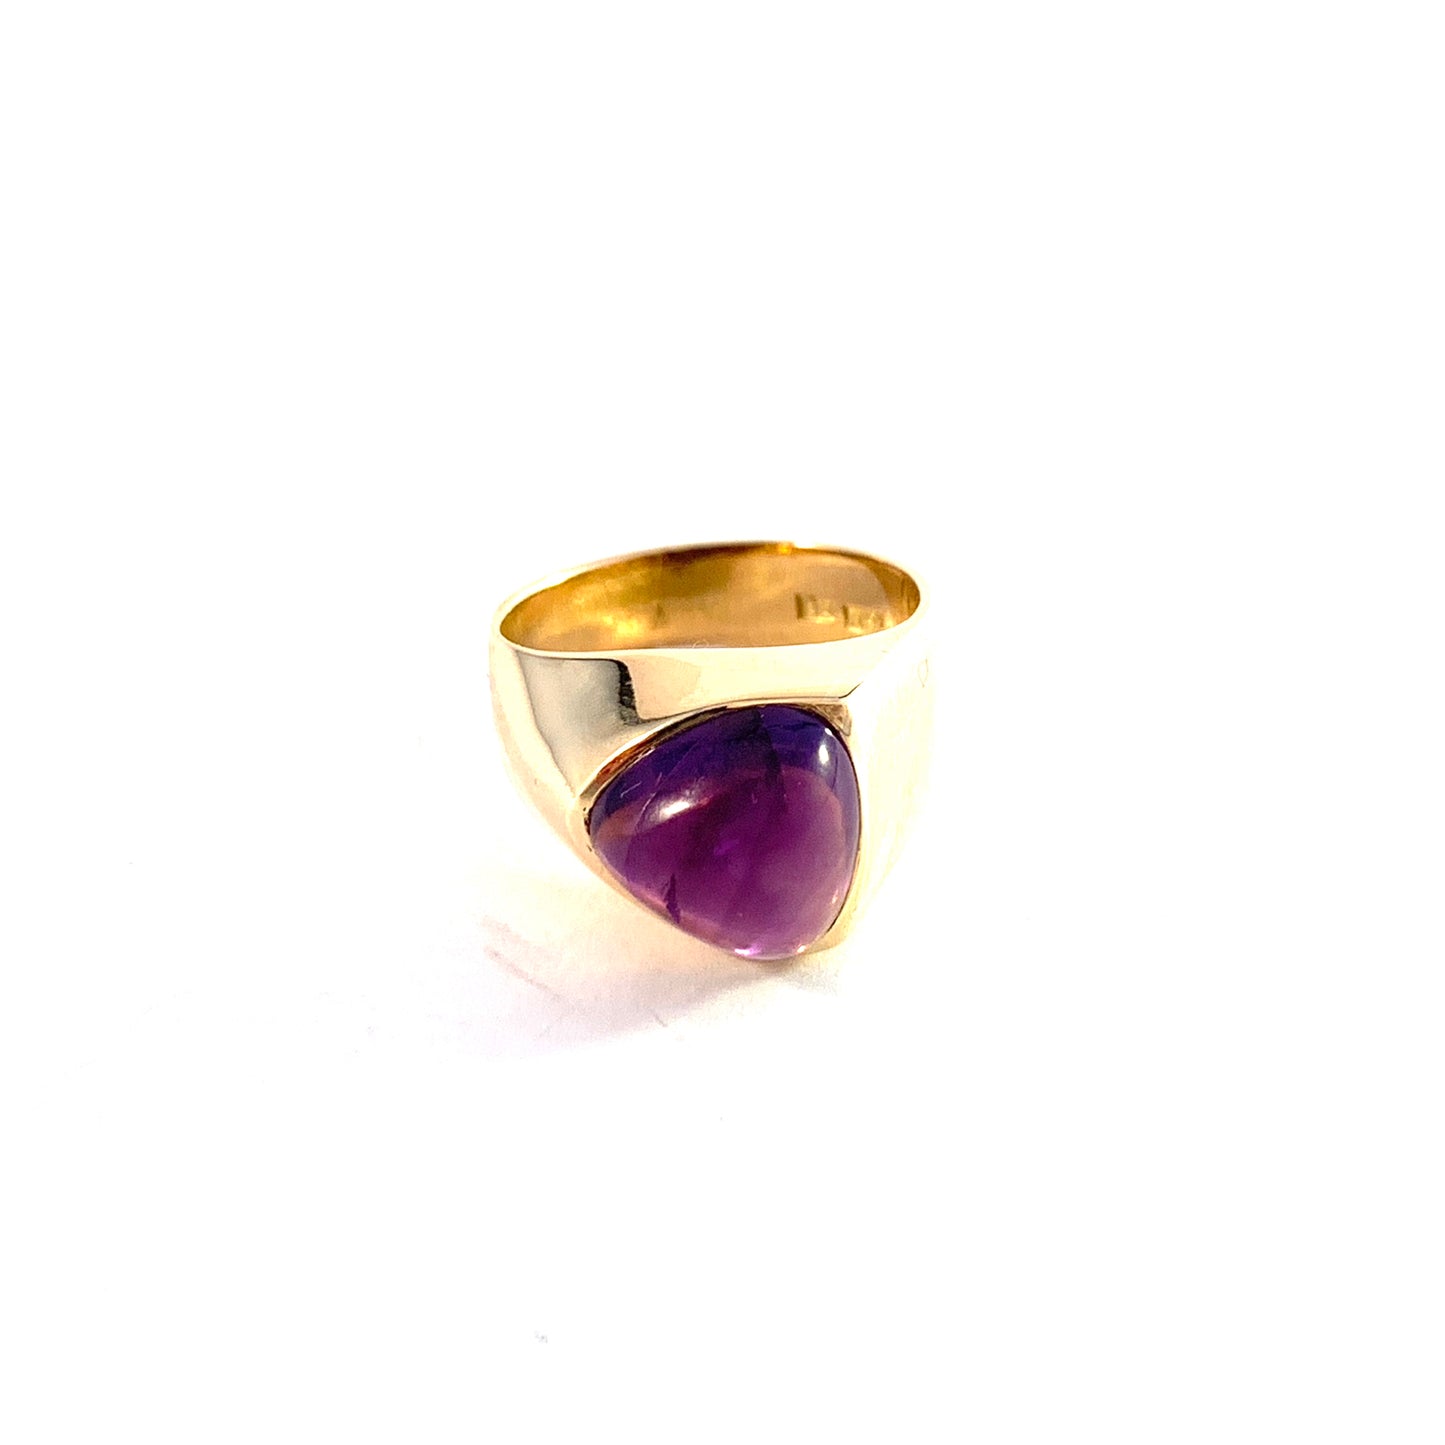 Atelje Stigbert, Sweden 1967. Vintage Modernist 18k Gold Amethyst Ring. Signed.